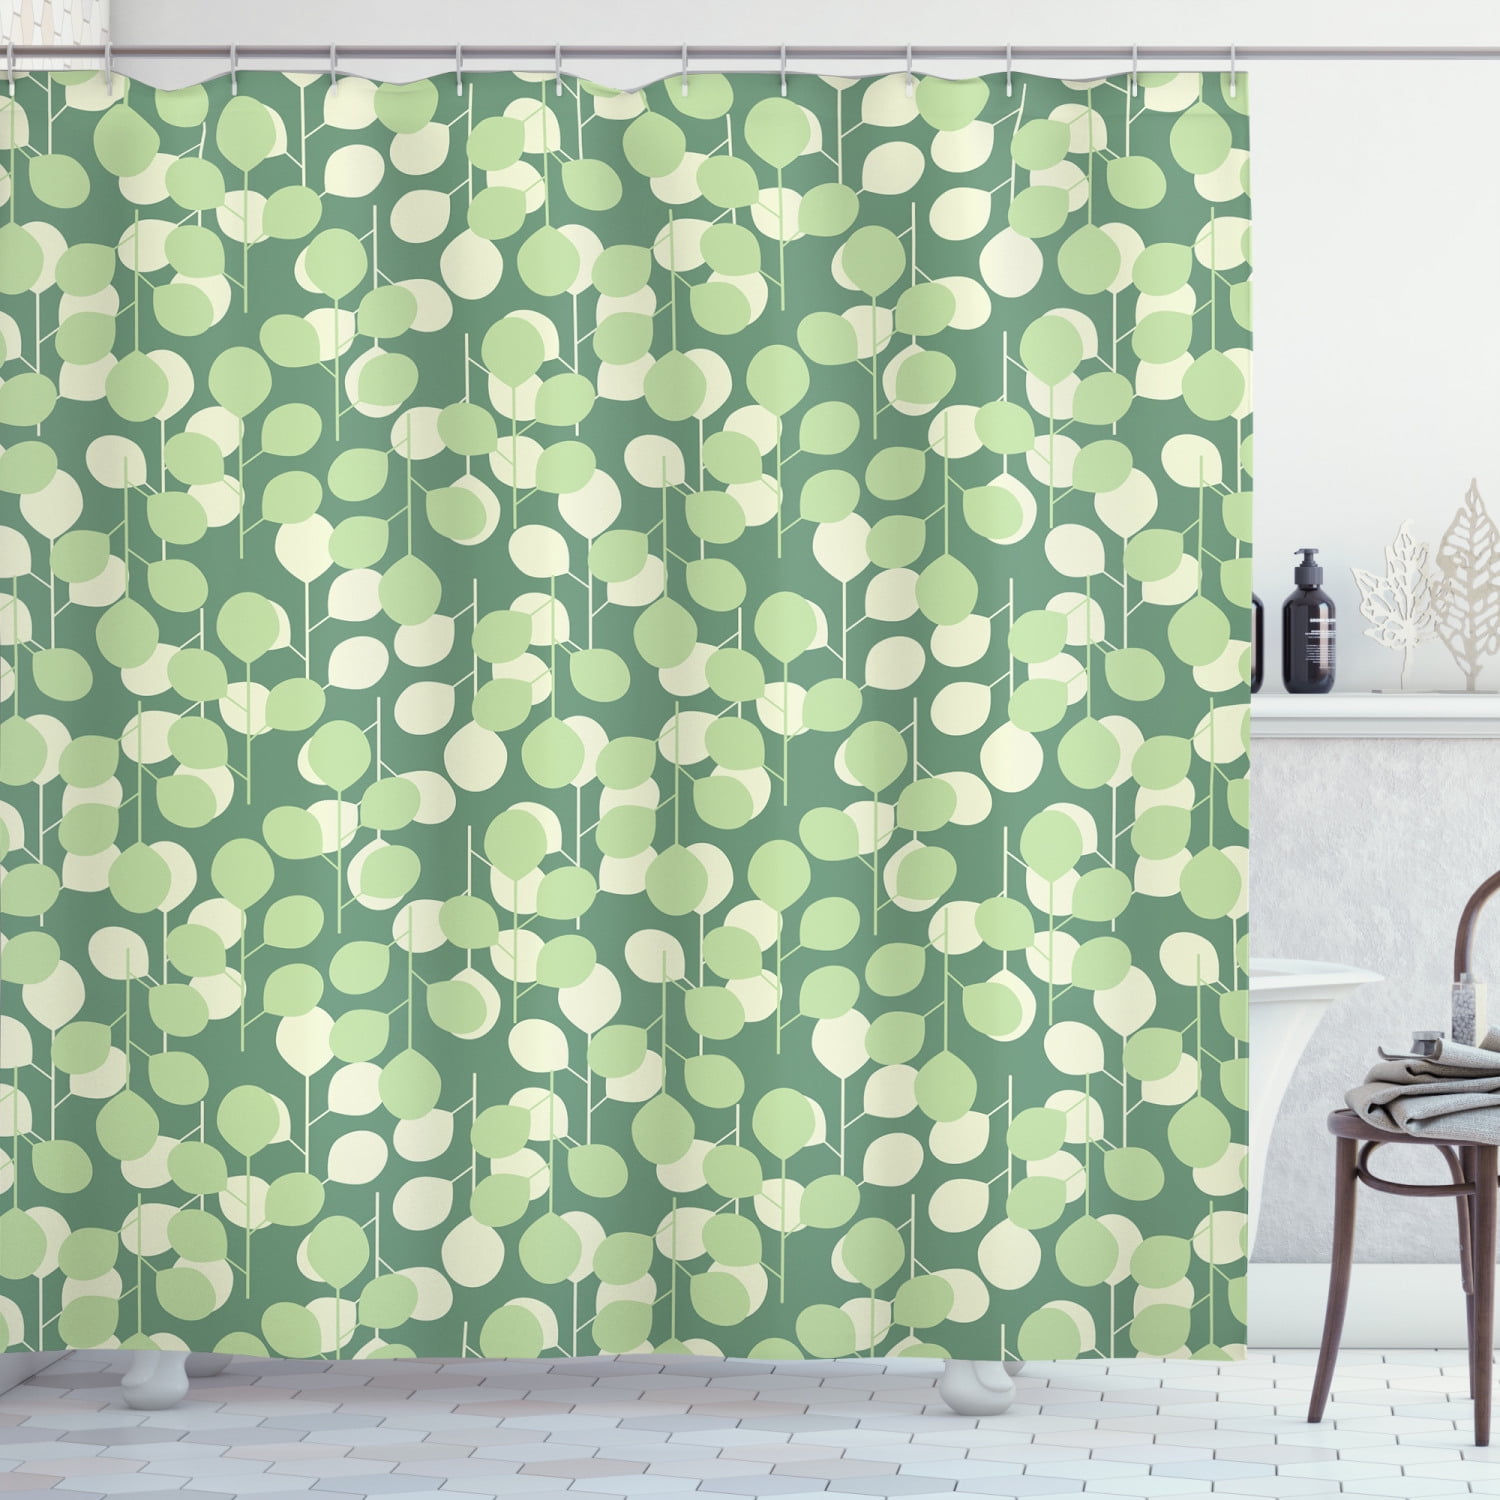 Waterproof Fabric Dark Green Fern Leaves Shower Curtain Liner Bathroom Set Hooks 